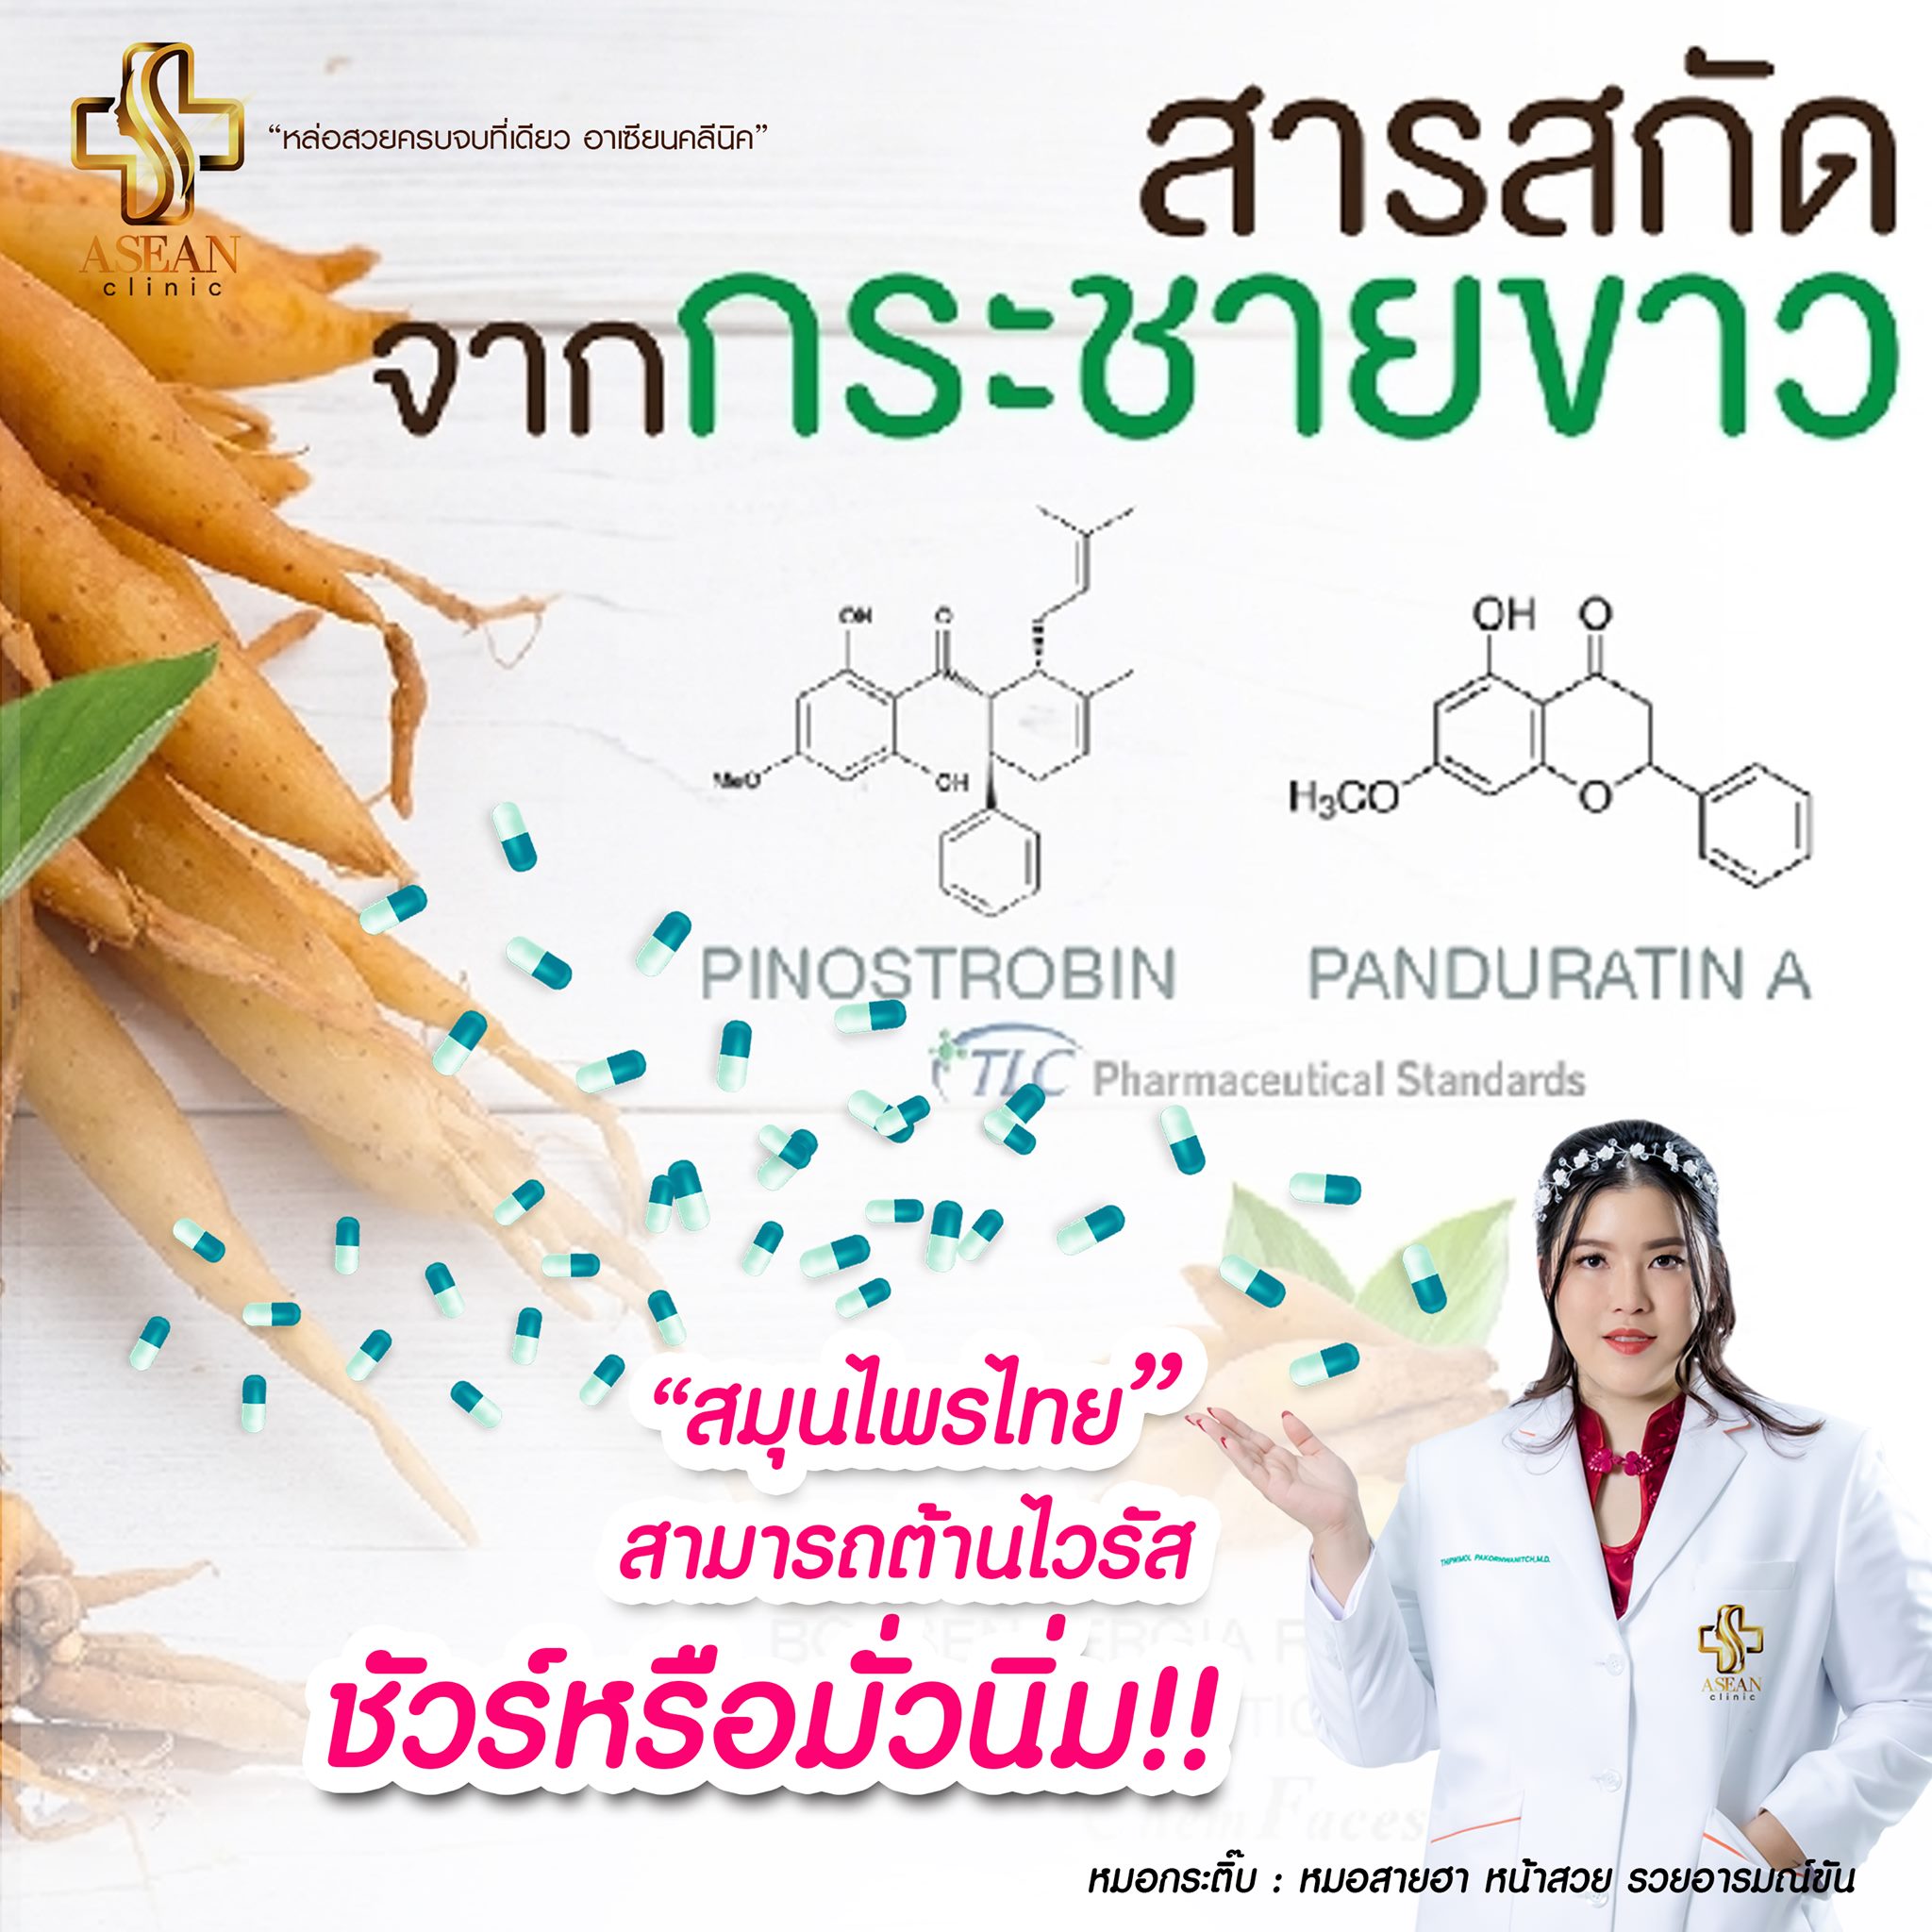 สมุนไพรไทย สามารถต้านไวรัส ชัวร์หรือมั่วนิ่ม-AseanBeautyClinic